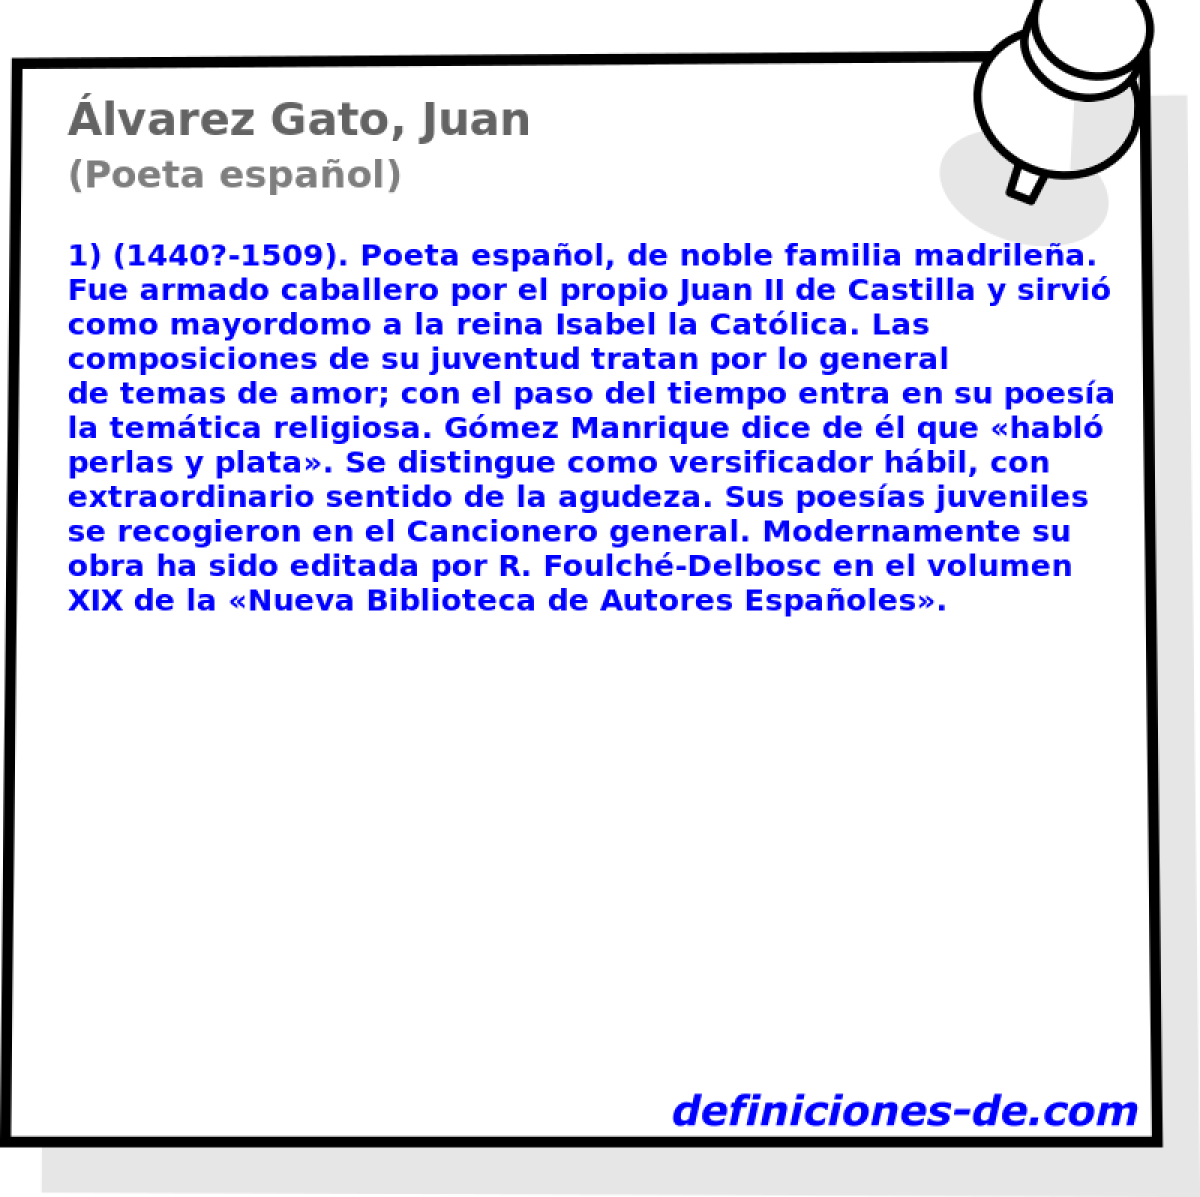 lvarez Gato, Juan (Poeta espaol)